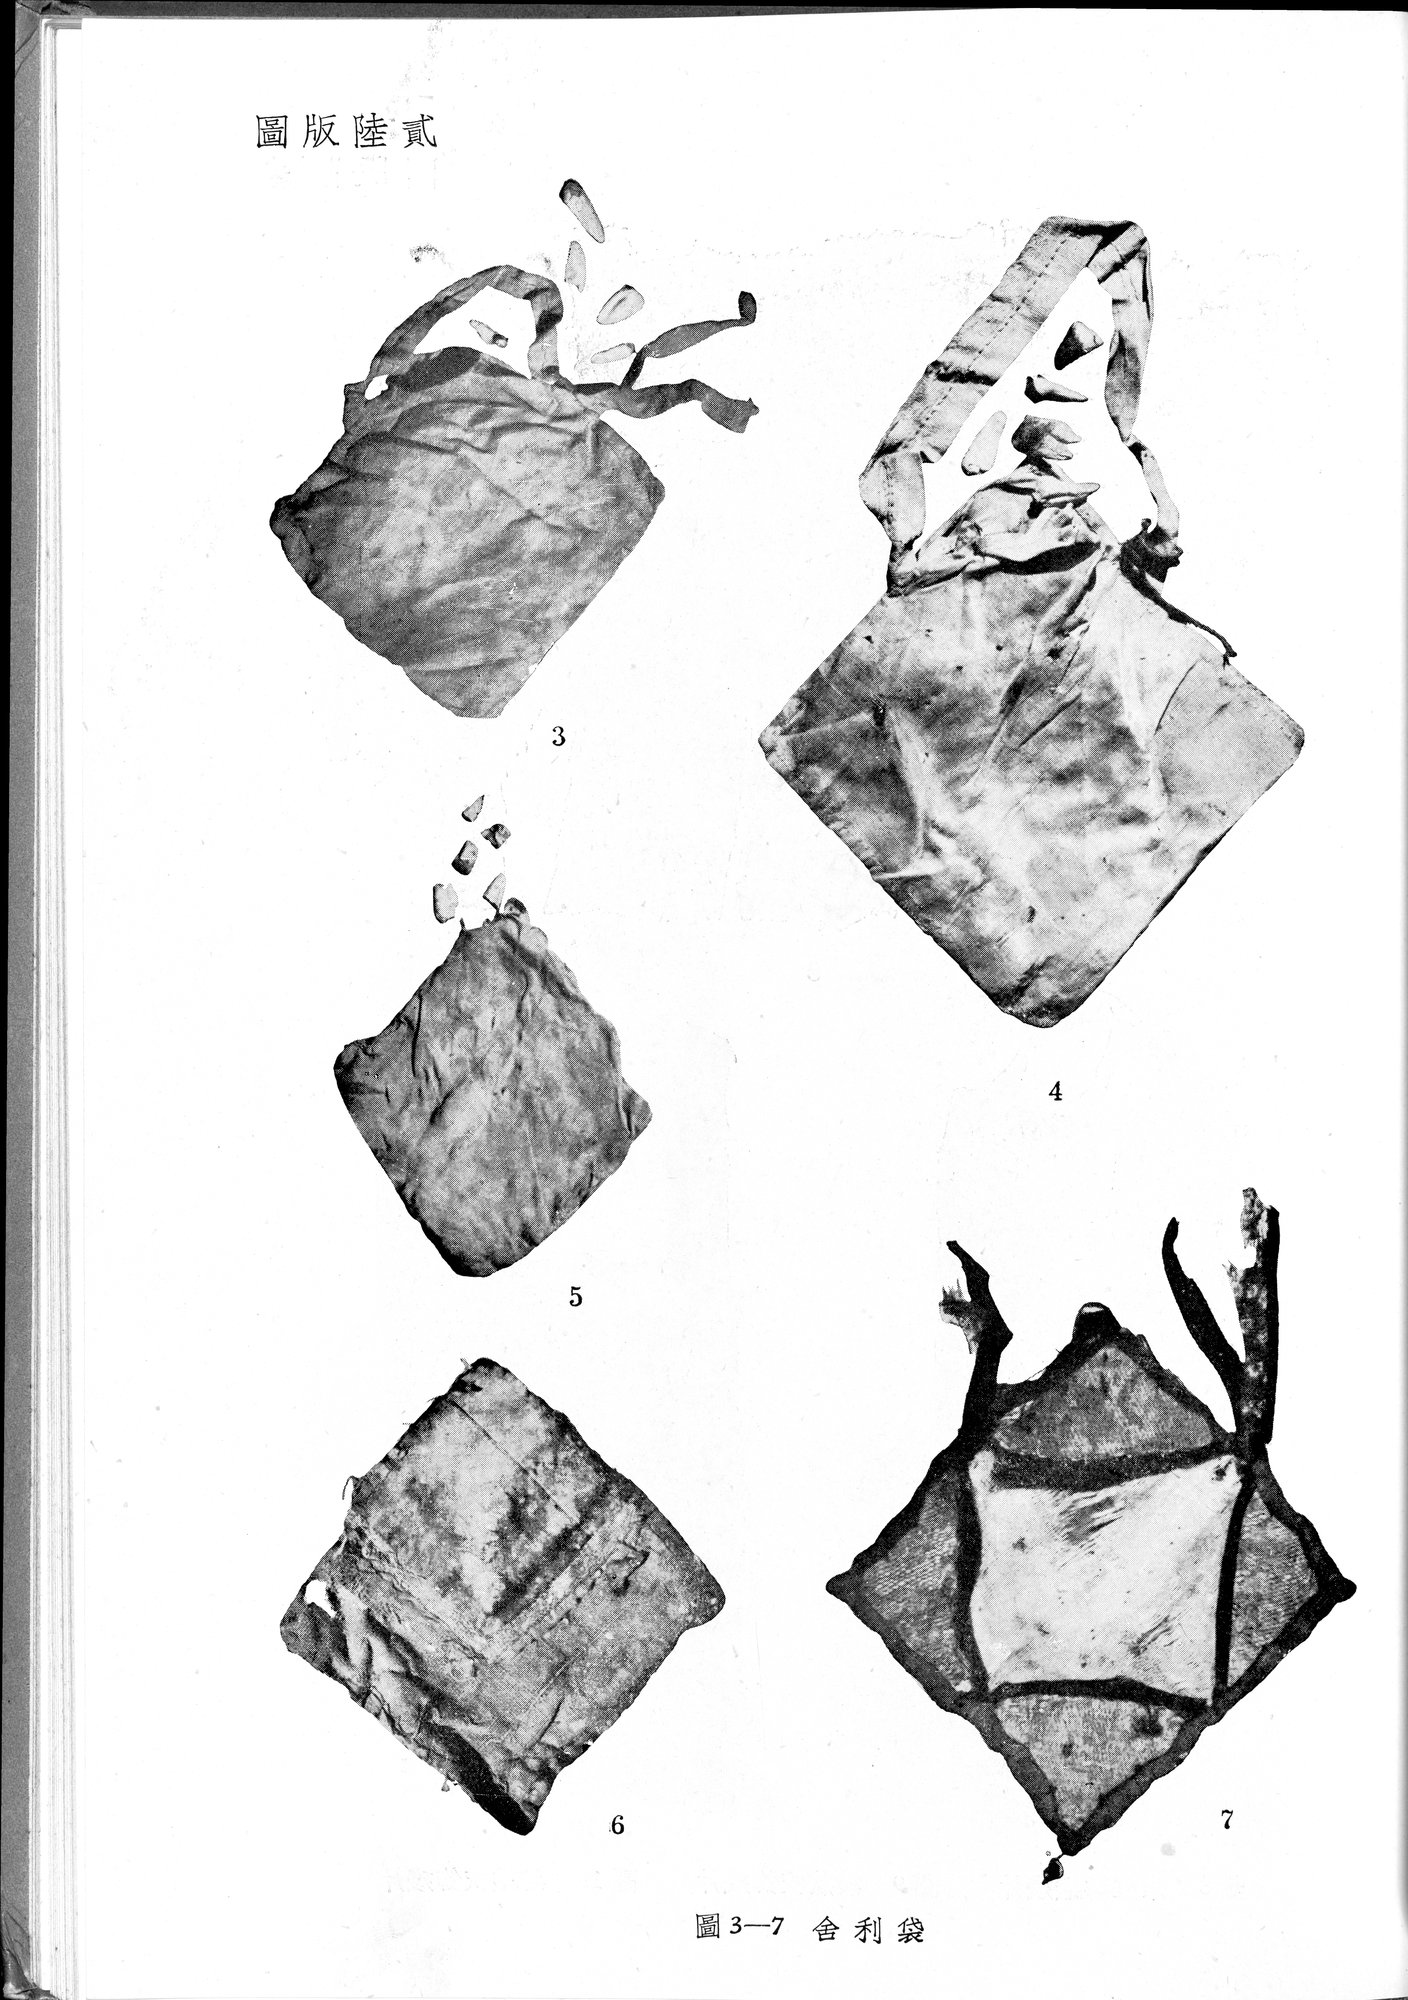 塔里木盆地考古記 : vol.1 / Page 291 (Grayscale High Resolution Image)